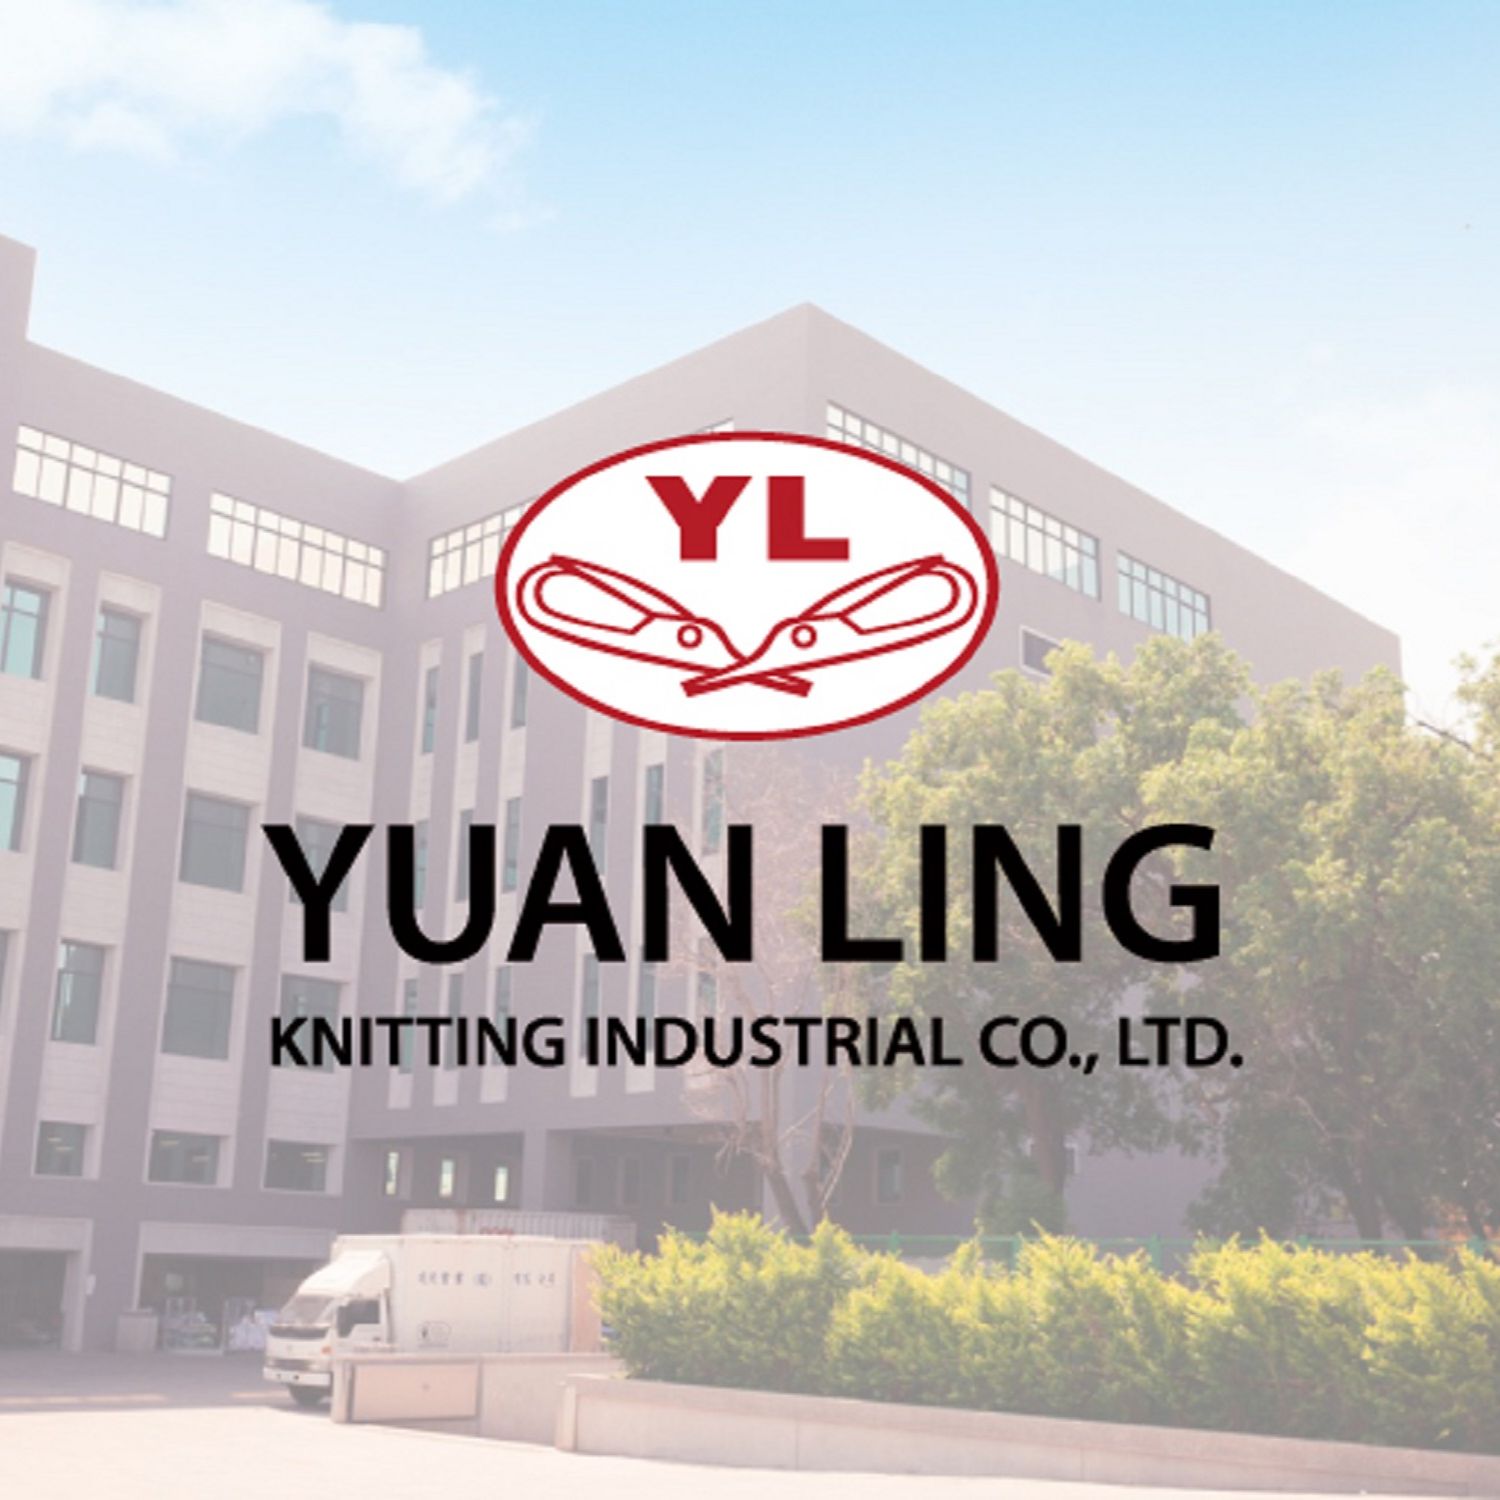 Yuan Ling Knitting